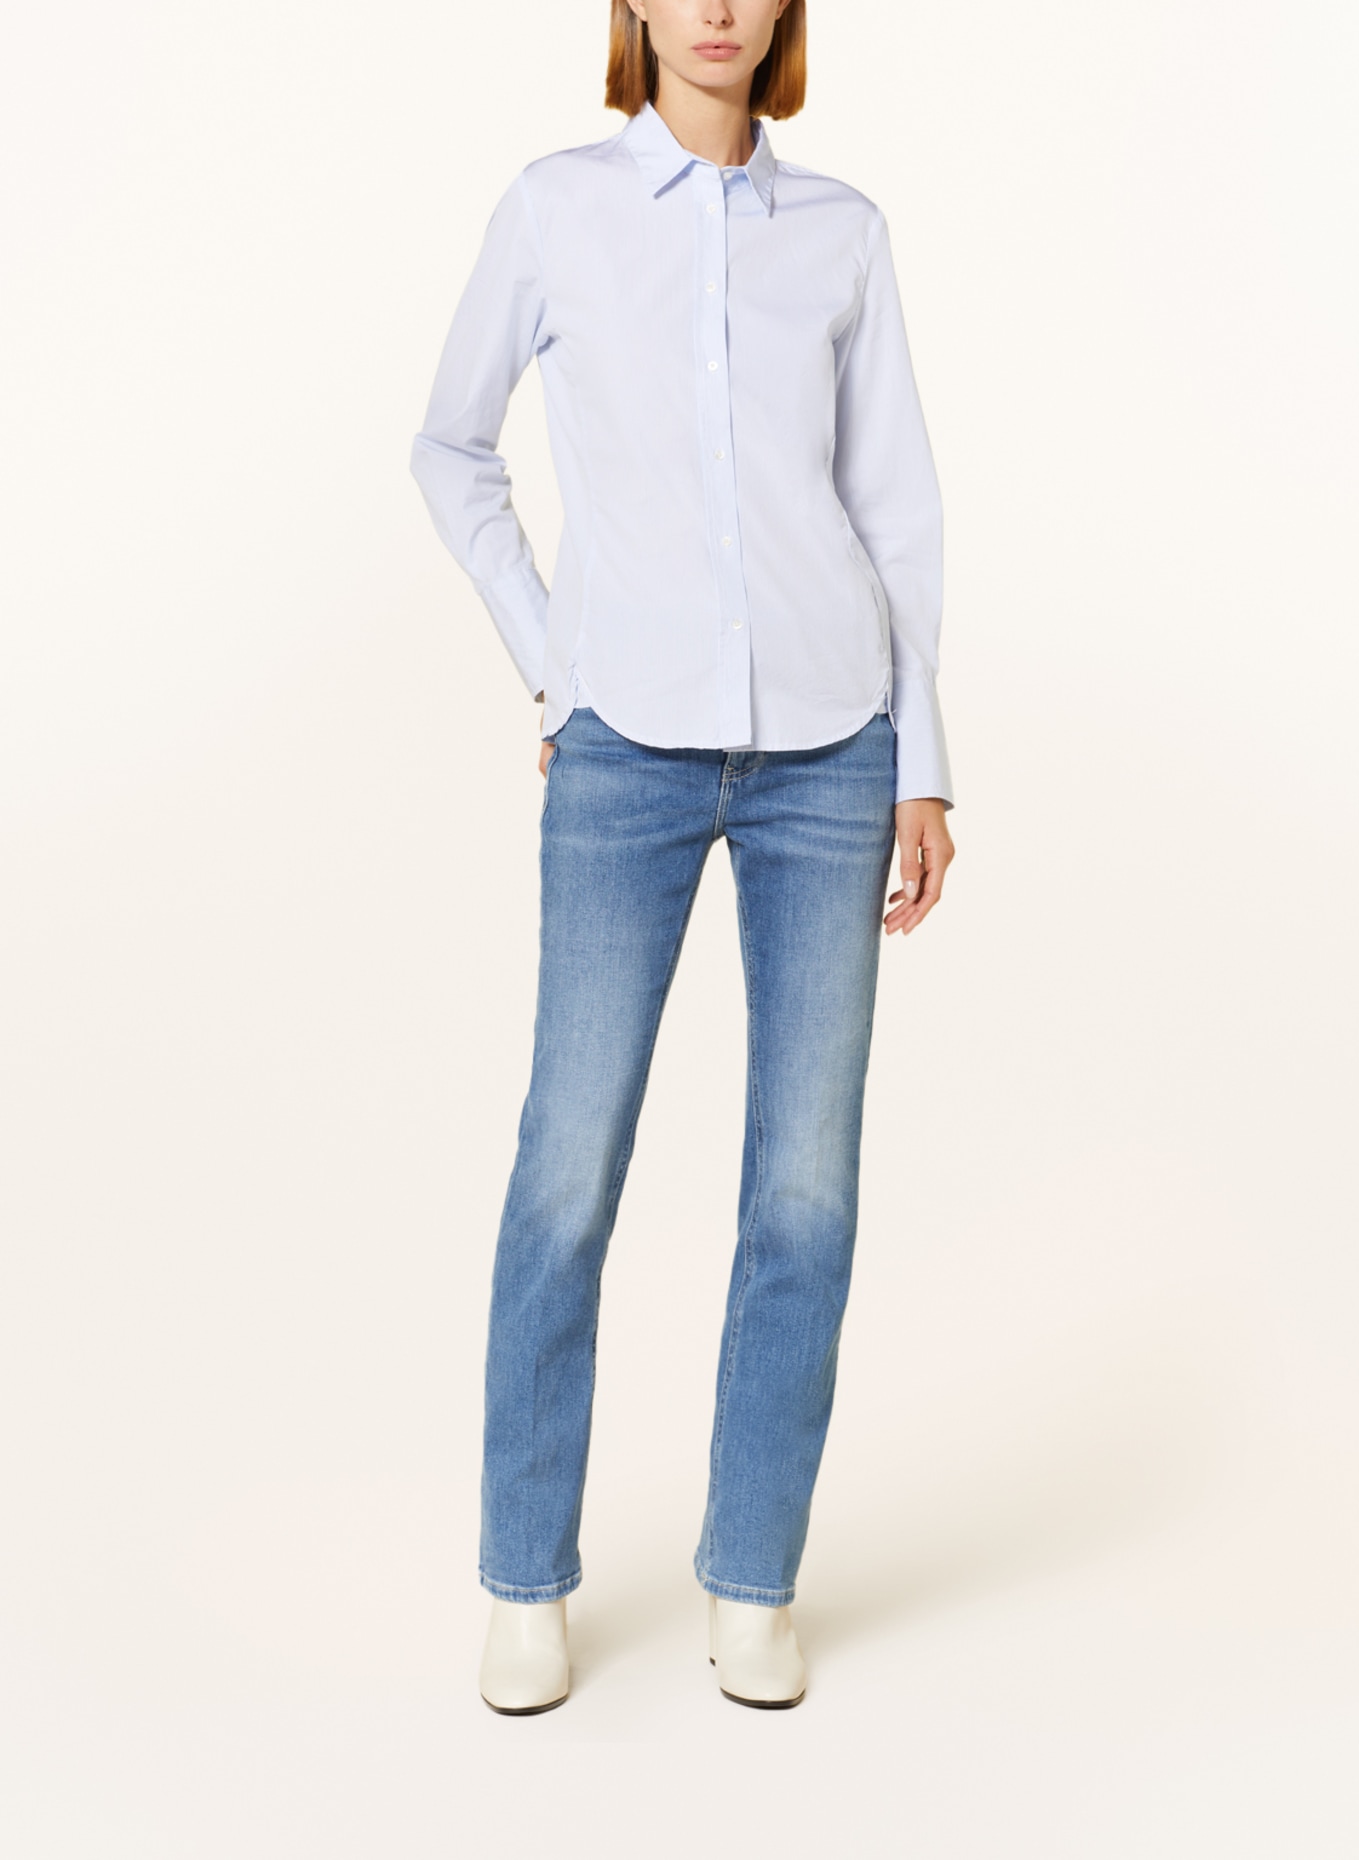 TONNO & PANNA Shirt blouse ELISABETH, Color: WHITE/ LIGHT BLUE (Image 2)